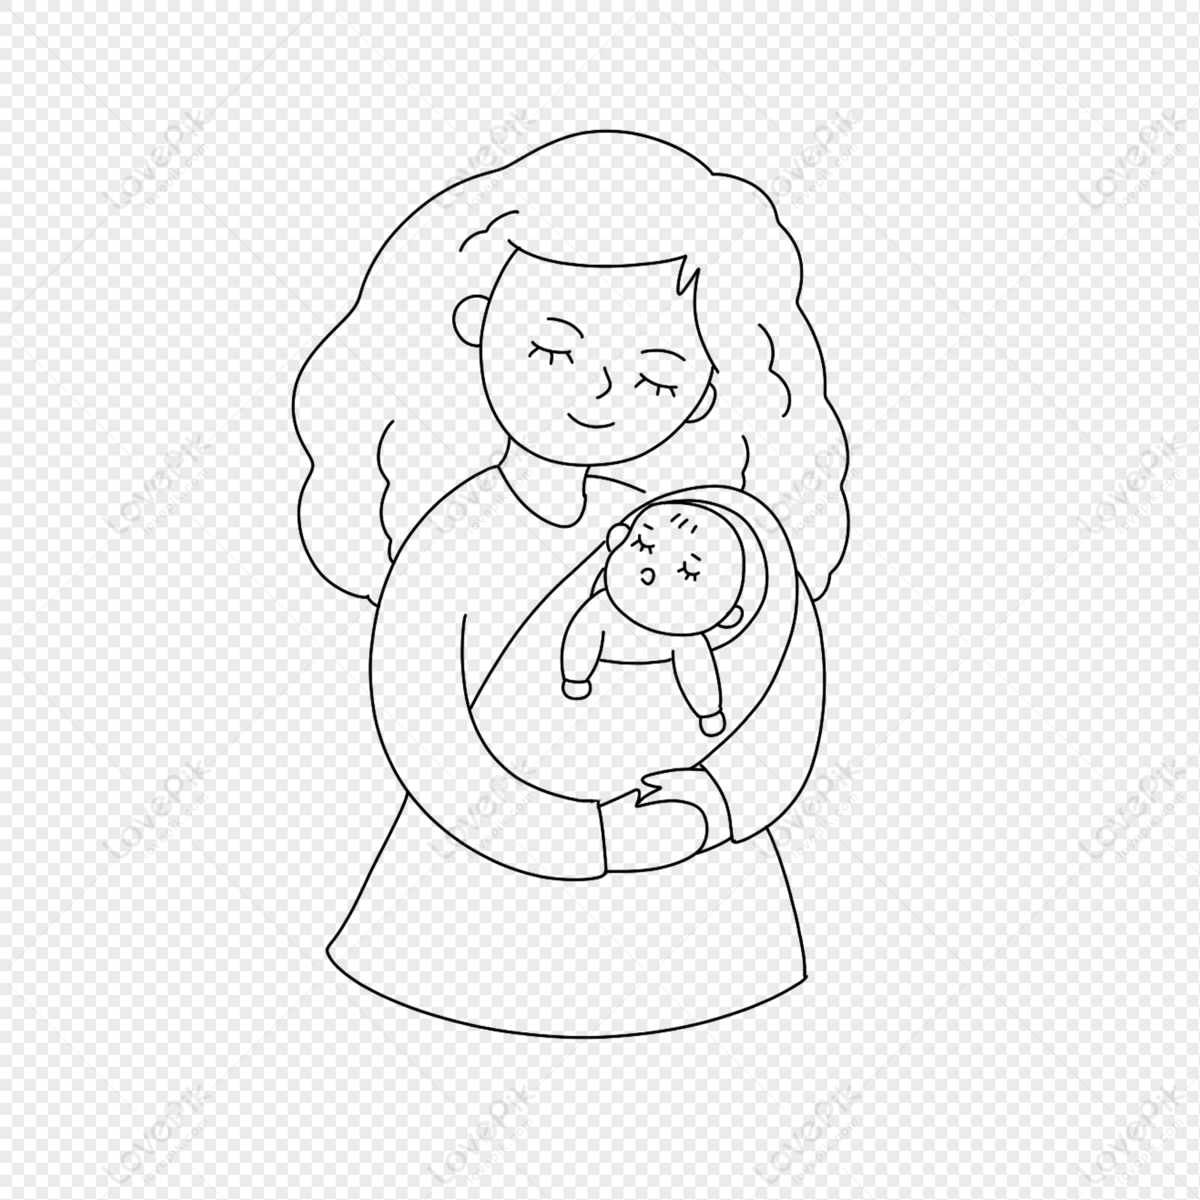 Hình Người Mẹ Bế Con: Hình ảnh người mẹ ôm con trong vòng tay, đầy yêu thương và sự bao bọc được thể hiện rõ nét trên bức tranh. Cùng thưởng thức hình người mẹ bế con để tận hưởng khoảnh khắc đầy ấm áp và ngọt ngào.